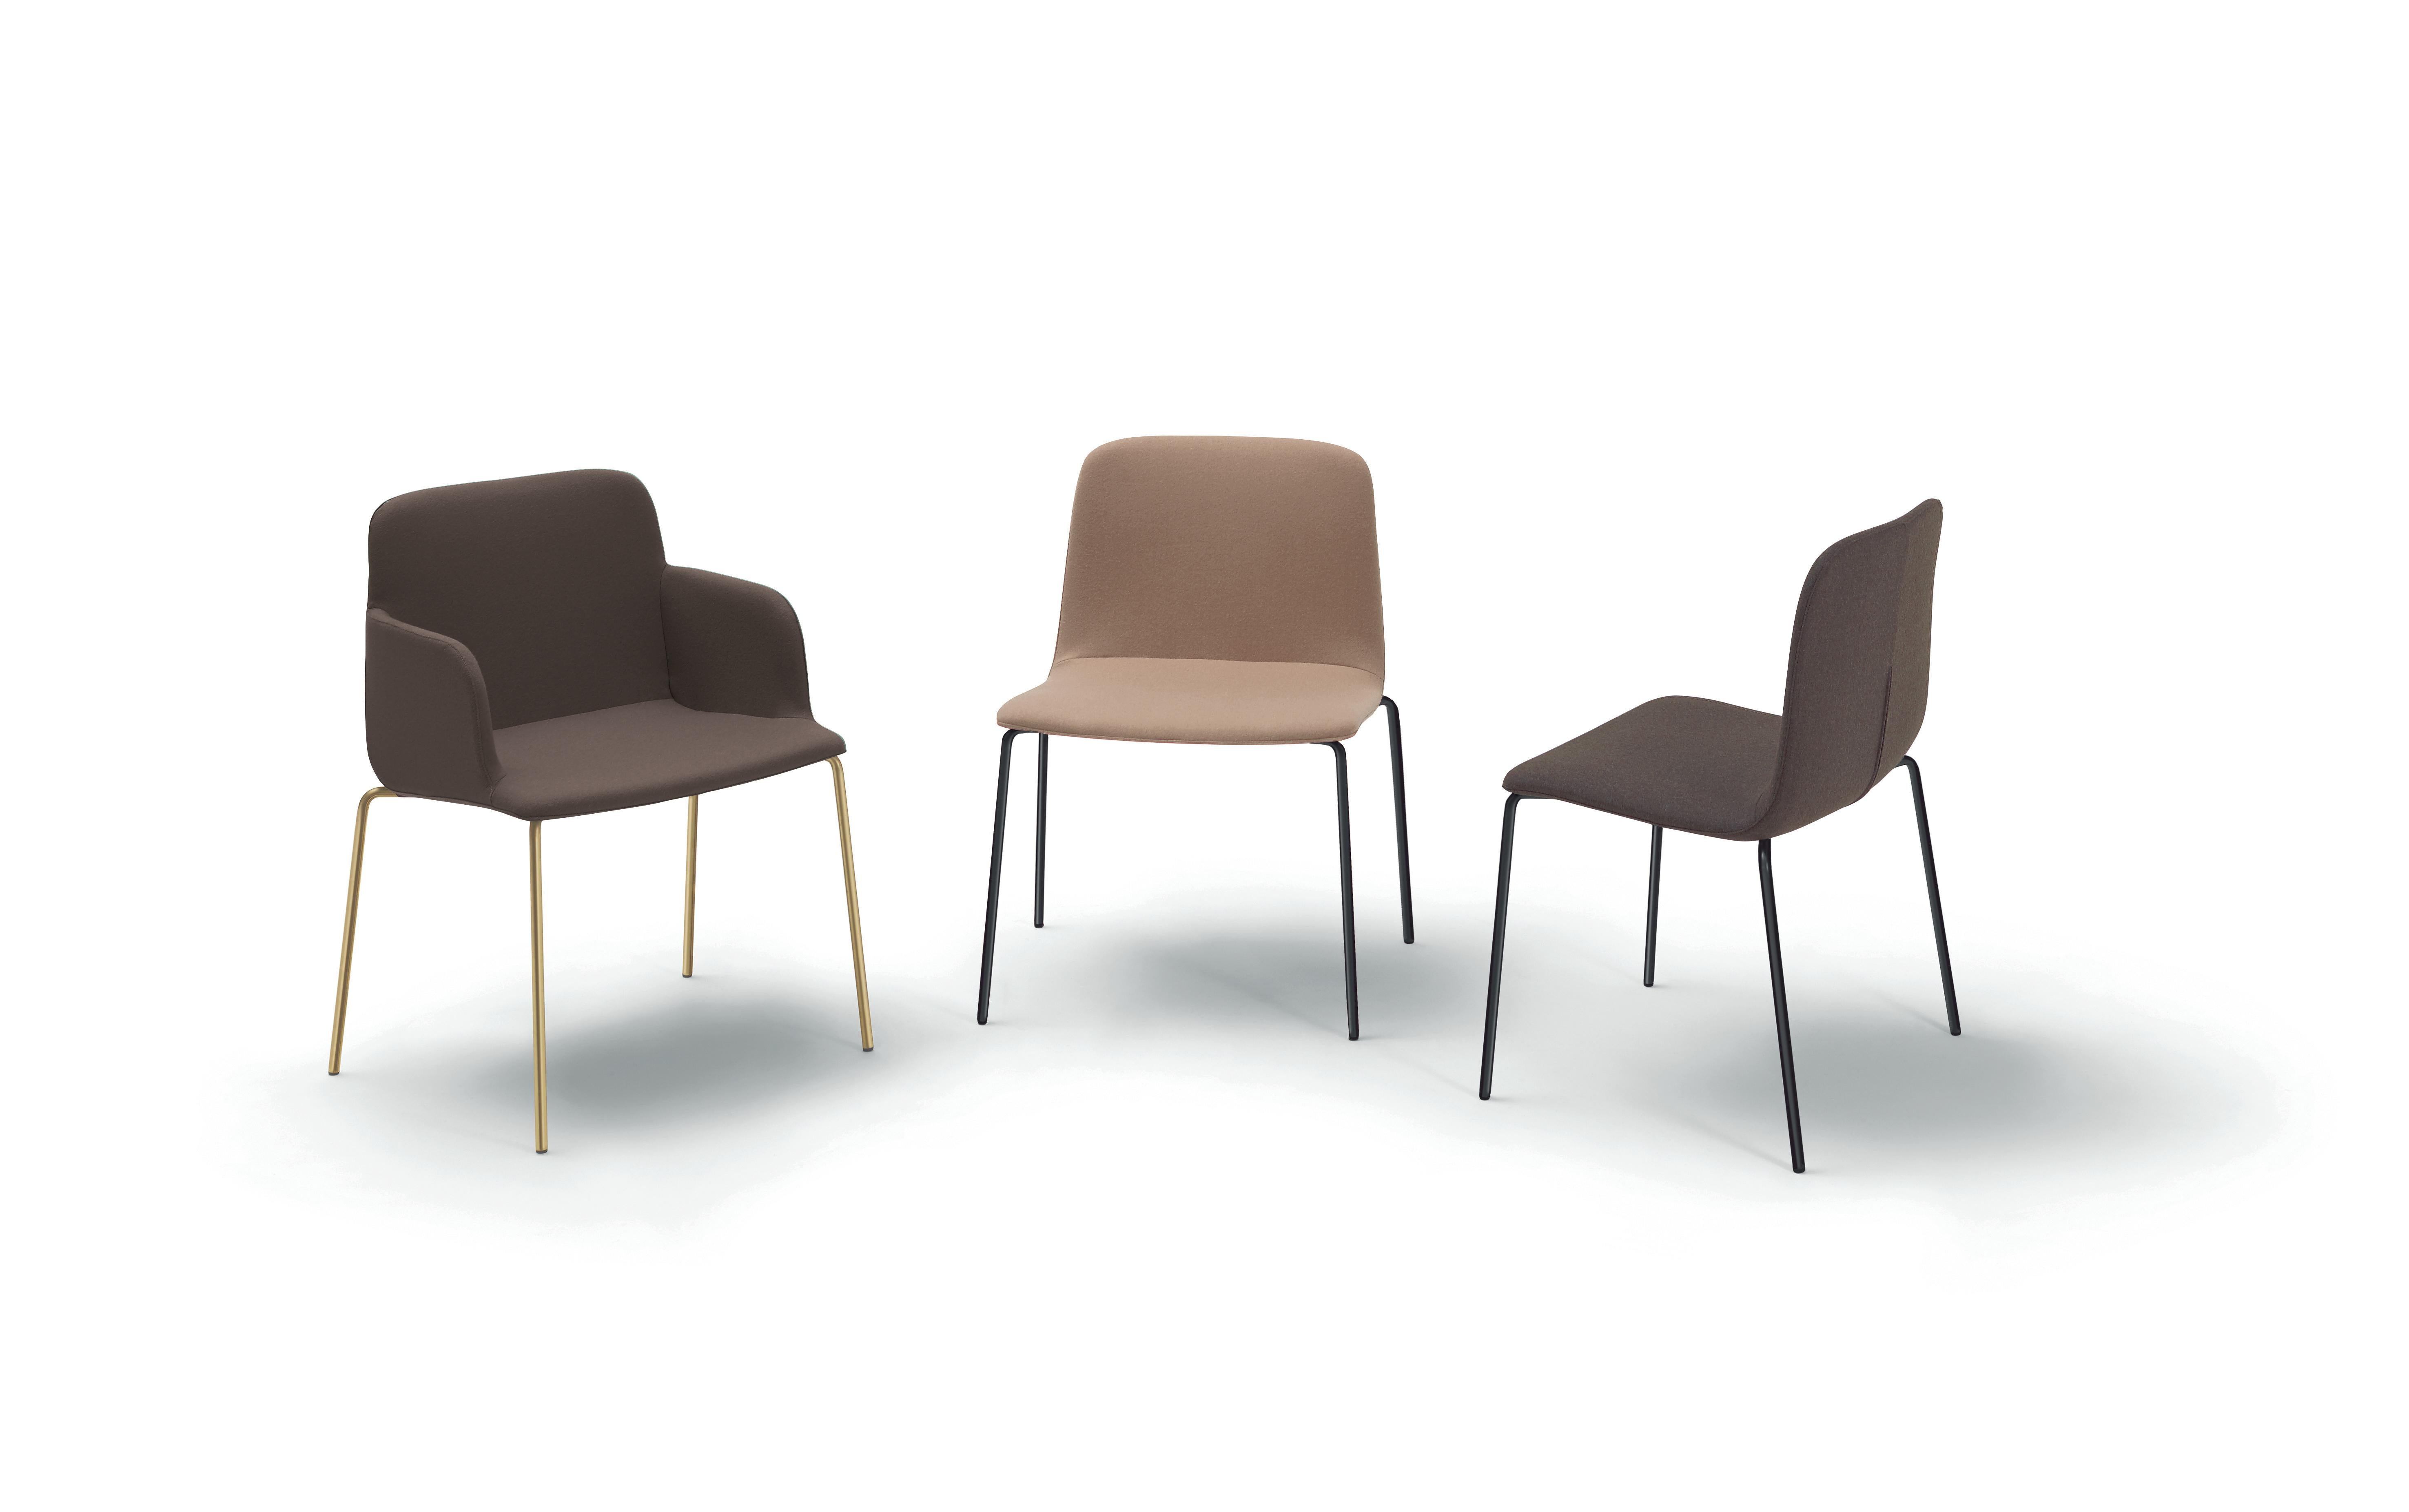 Sa caractéristique est sa largeur supplémentaire. En fait, elle est légèrement plus large que la plupart des chaises, ce qui la rend plus luxueuse que les autres chaises de ce type, sans utiliser plus d'espace qu'une chaise habituelle.

Matériaux